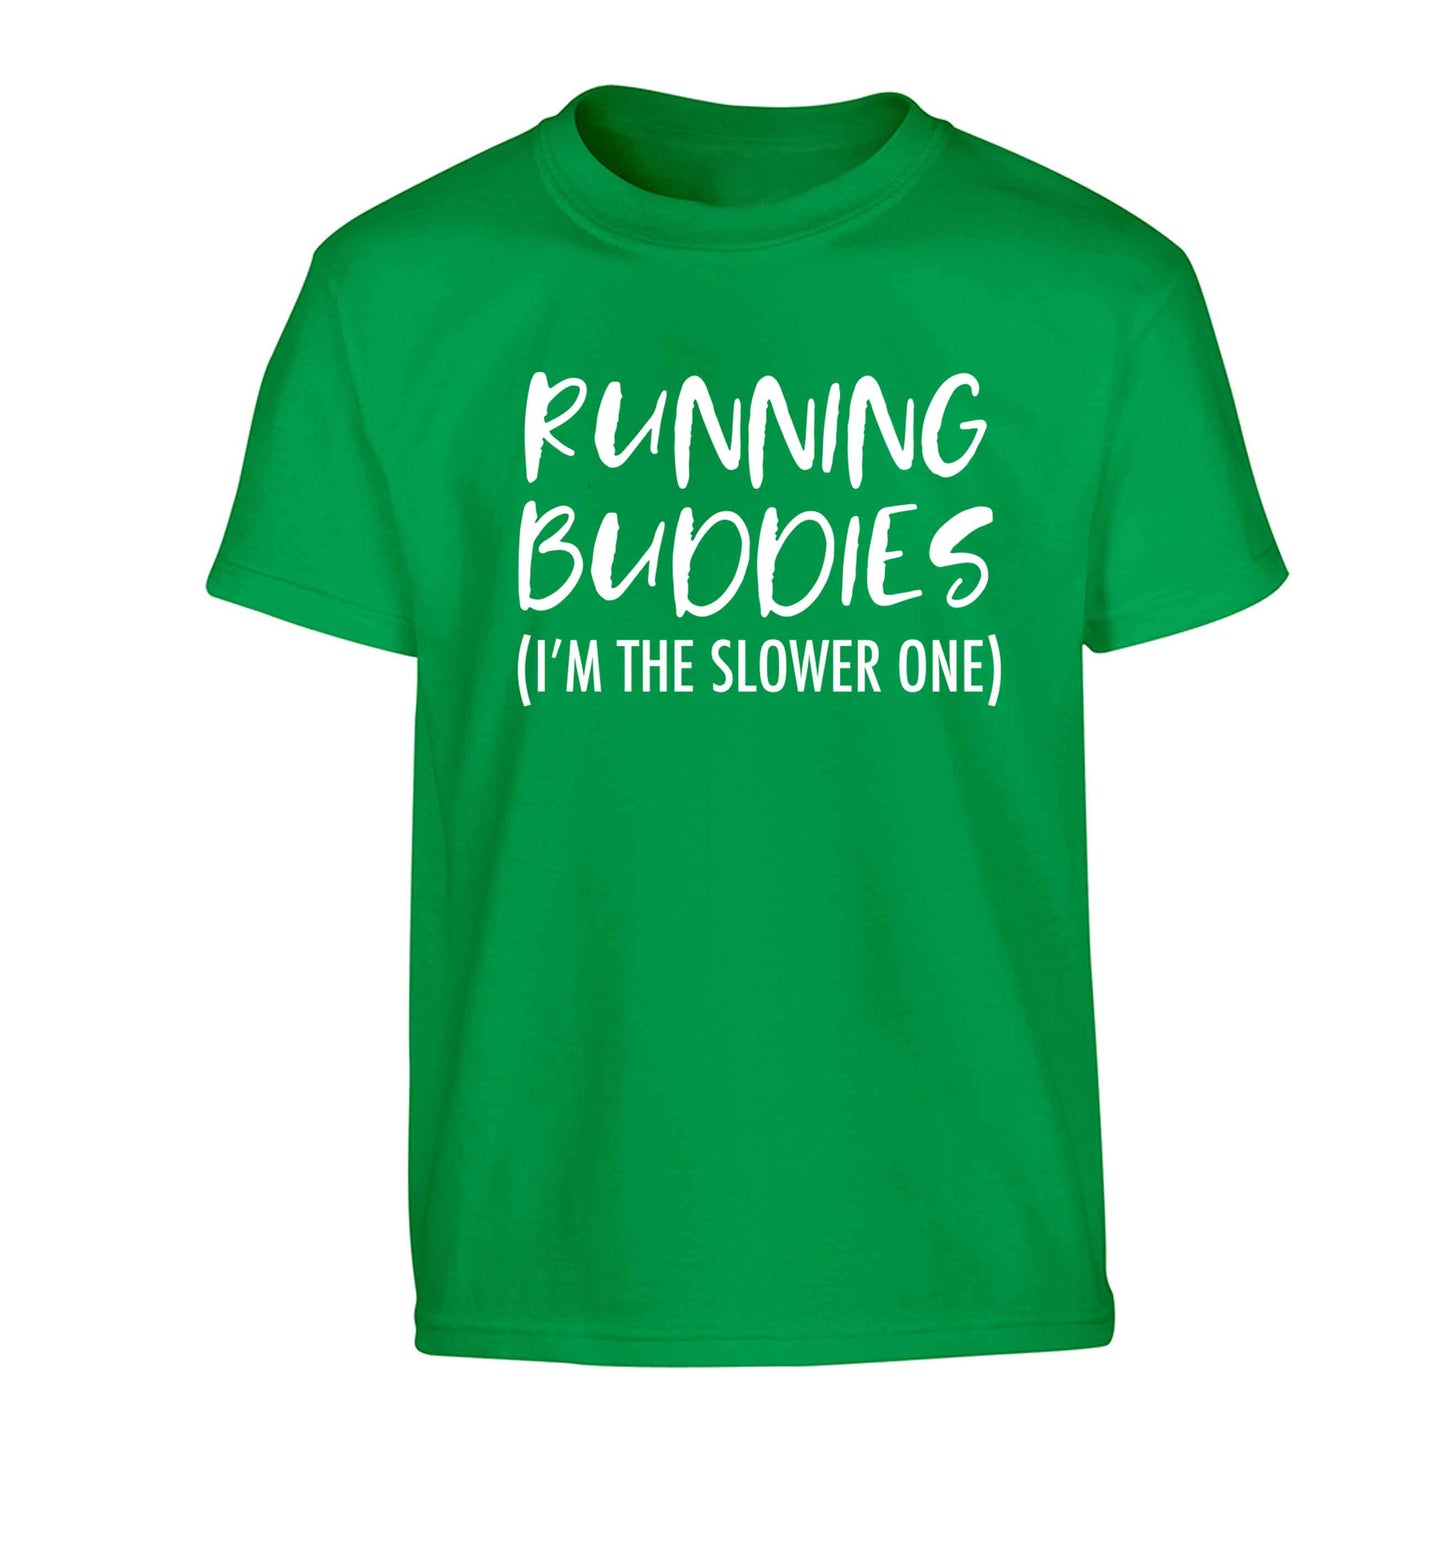 Running buddies (I'm the slower one) Children's green Tshirt 12-13 Years